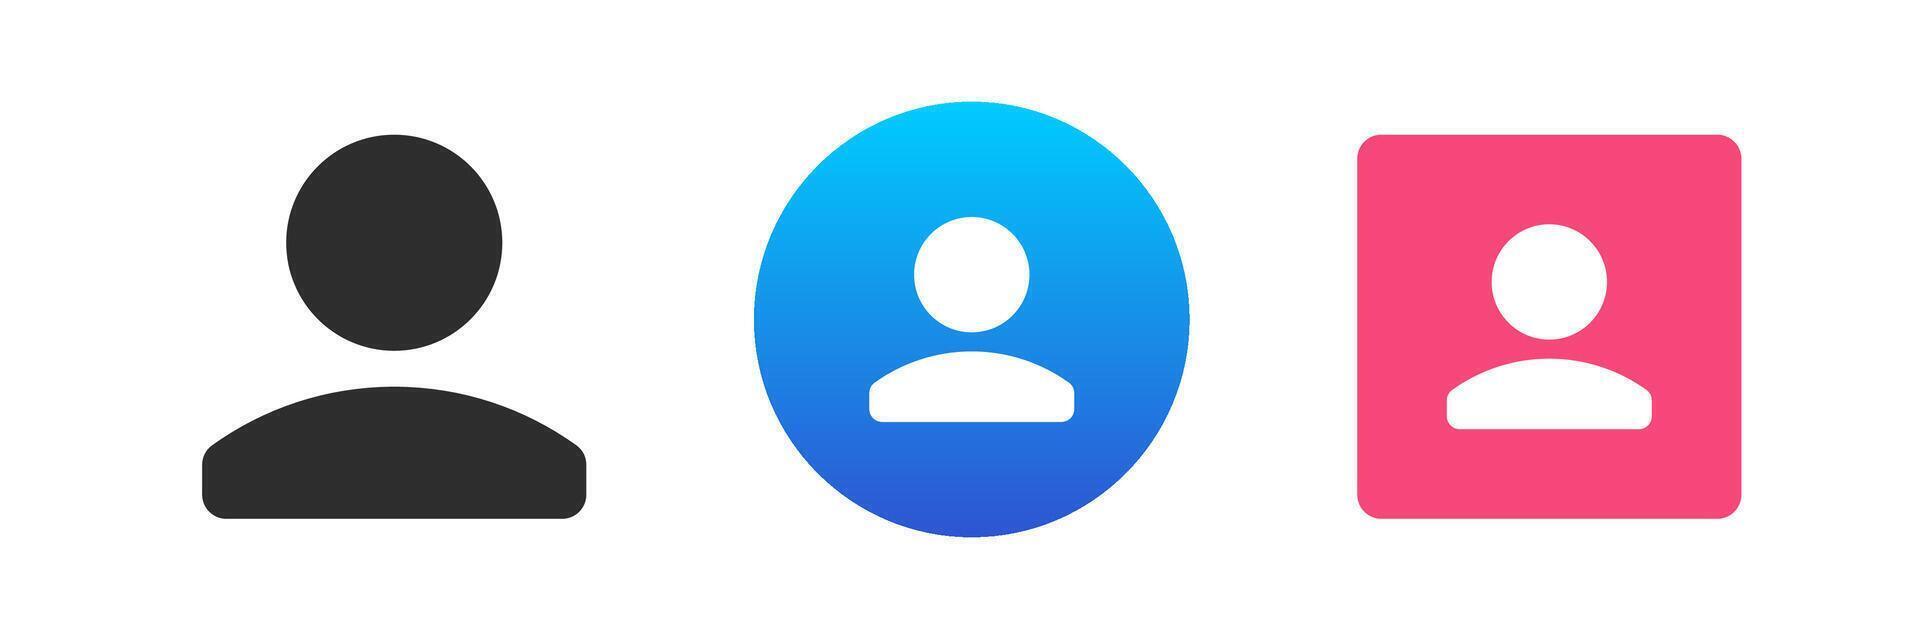 utilisateur membre contact avatar social réseau profil personnel information icône ensemble plat vecteur